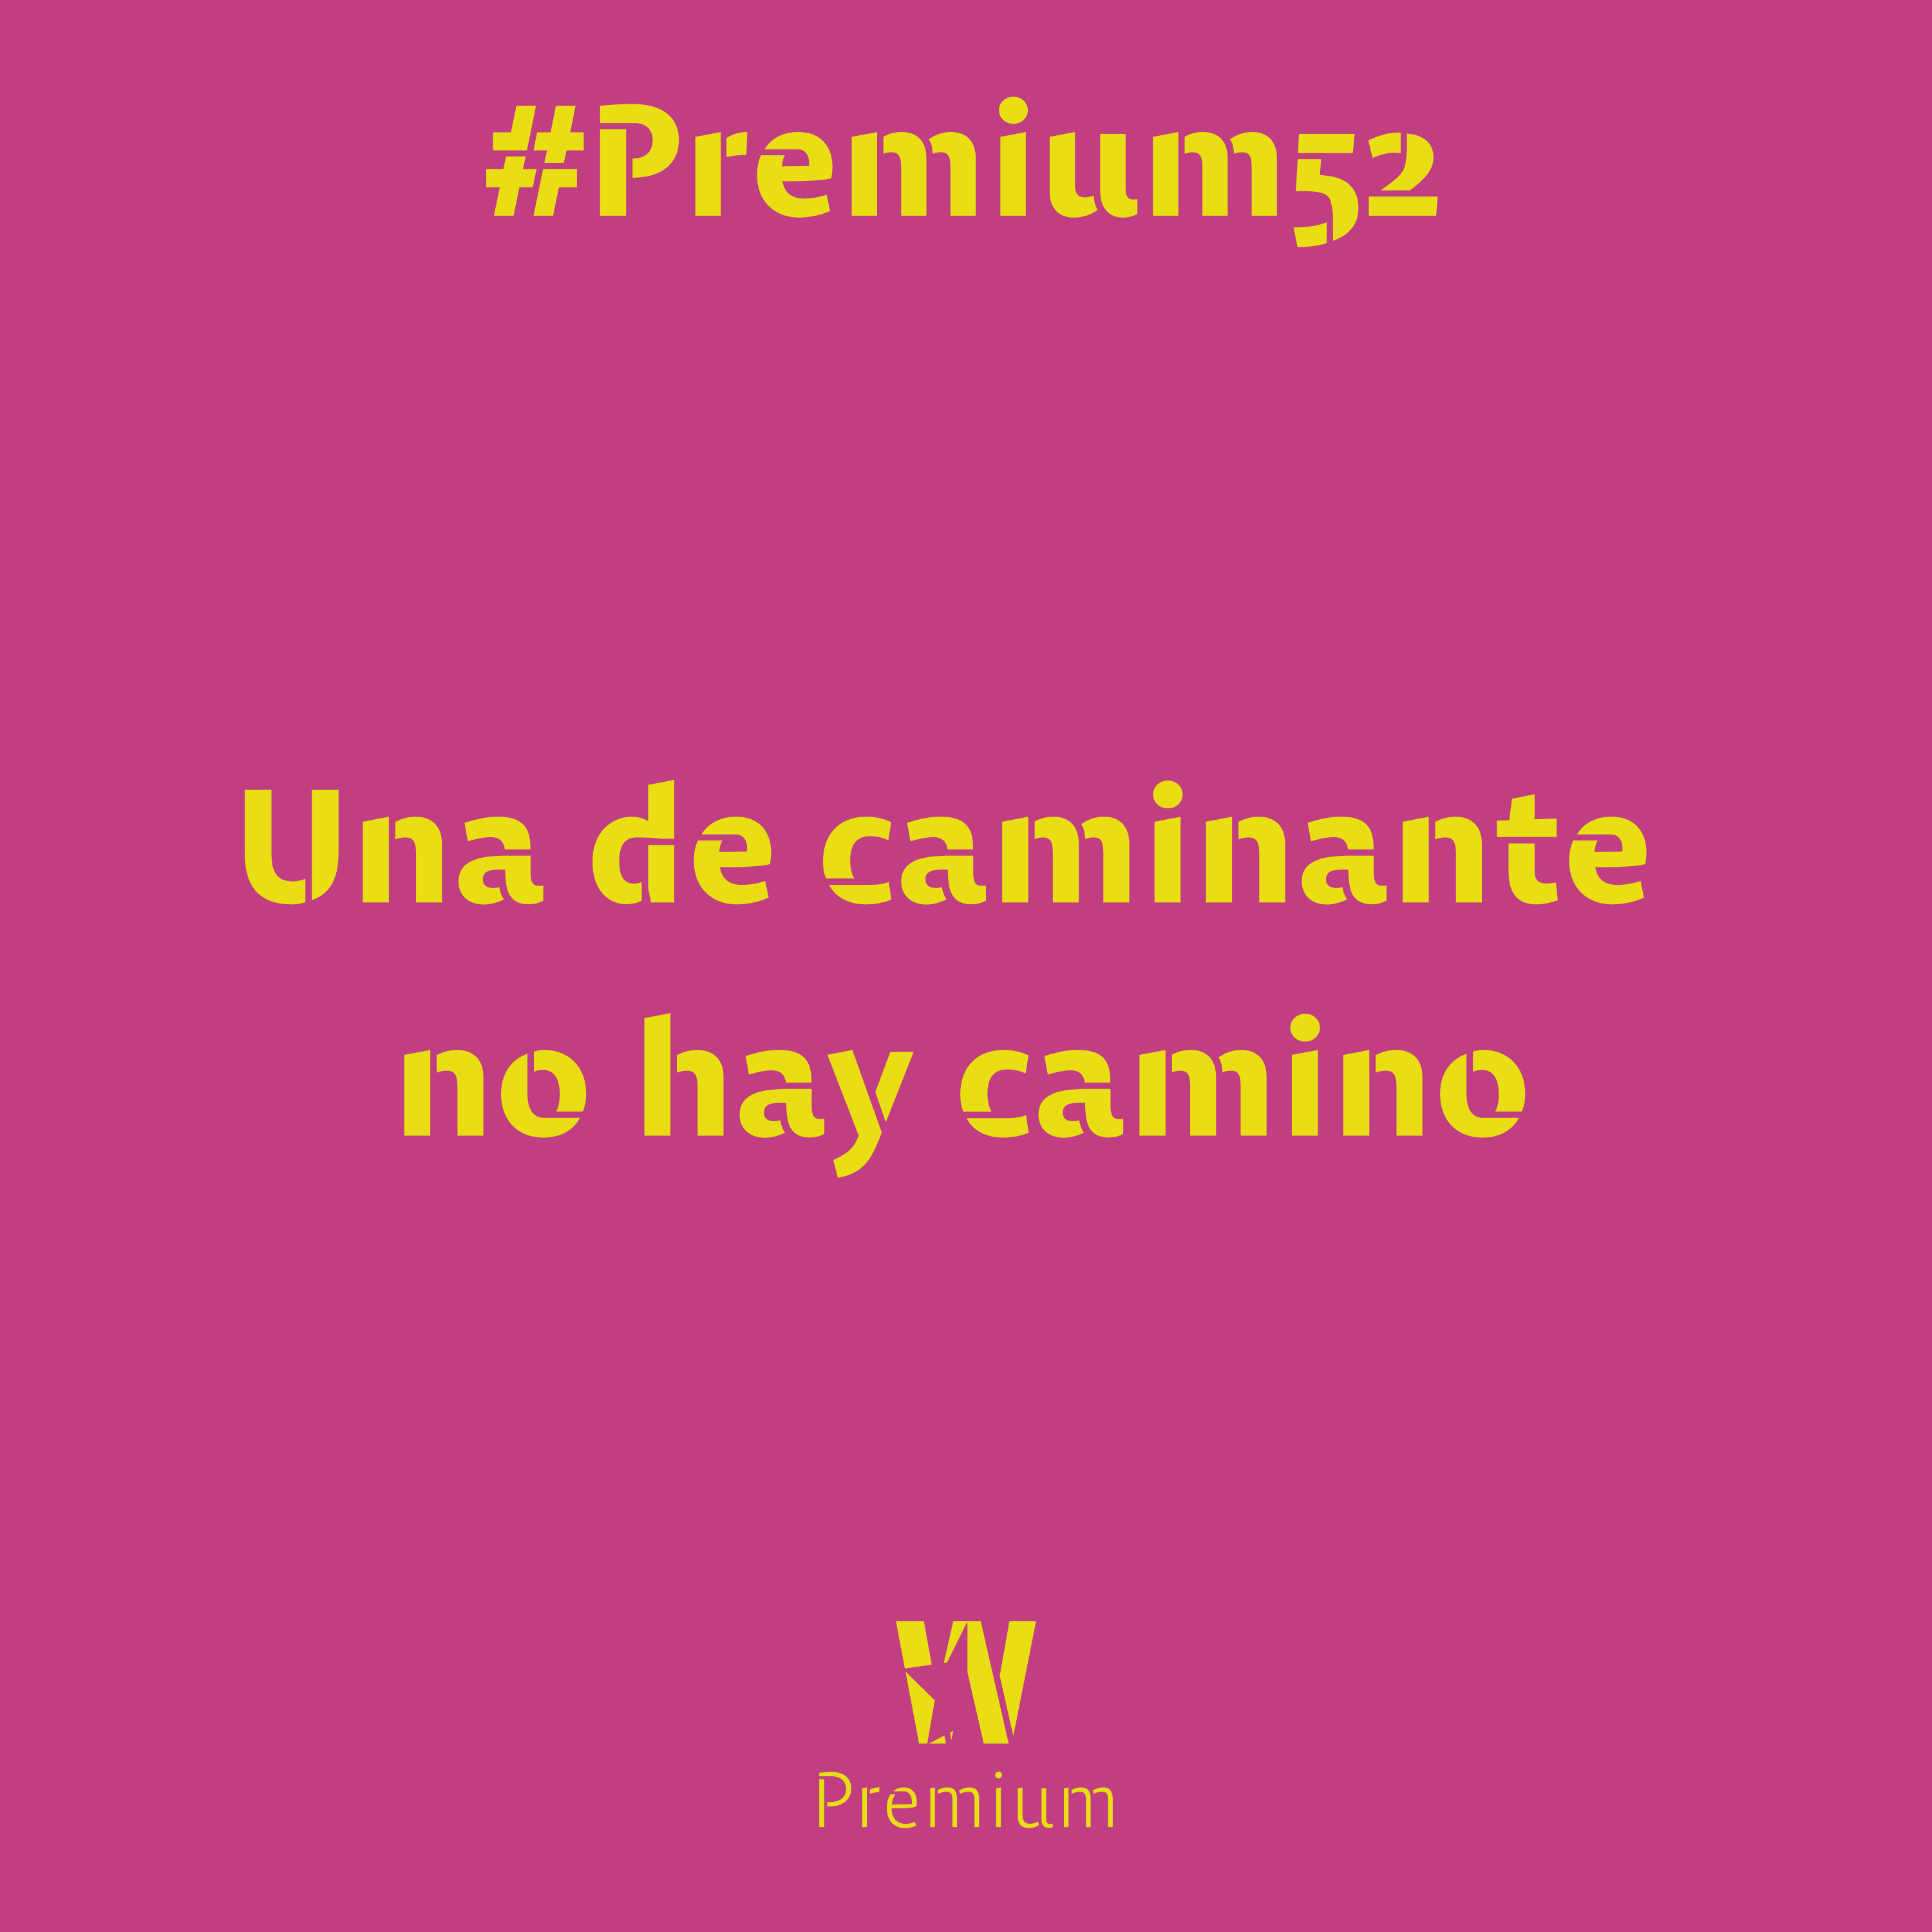 #Premium52 - Una de caminante no hay camino